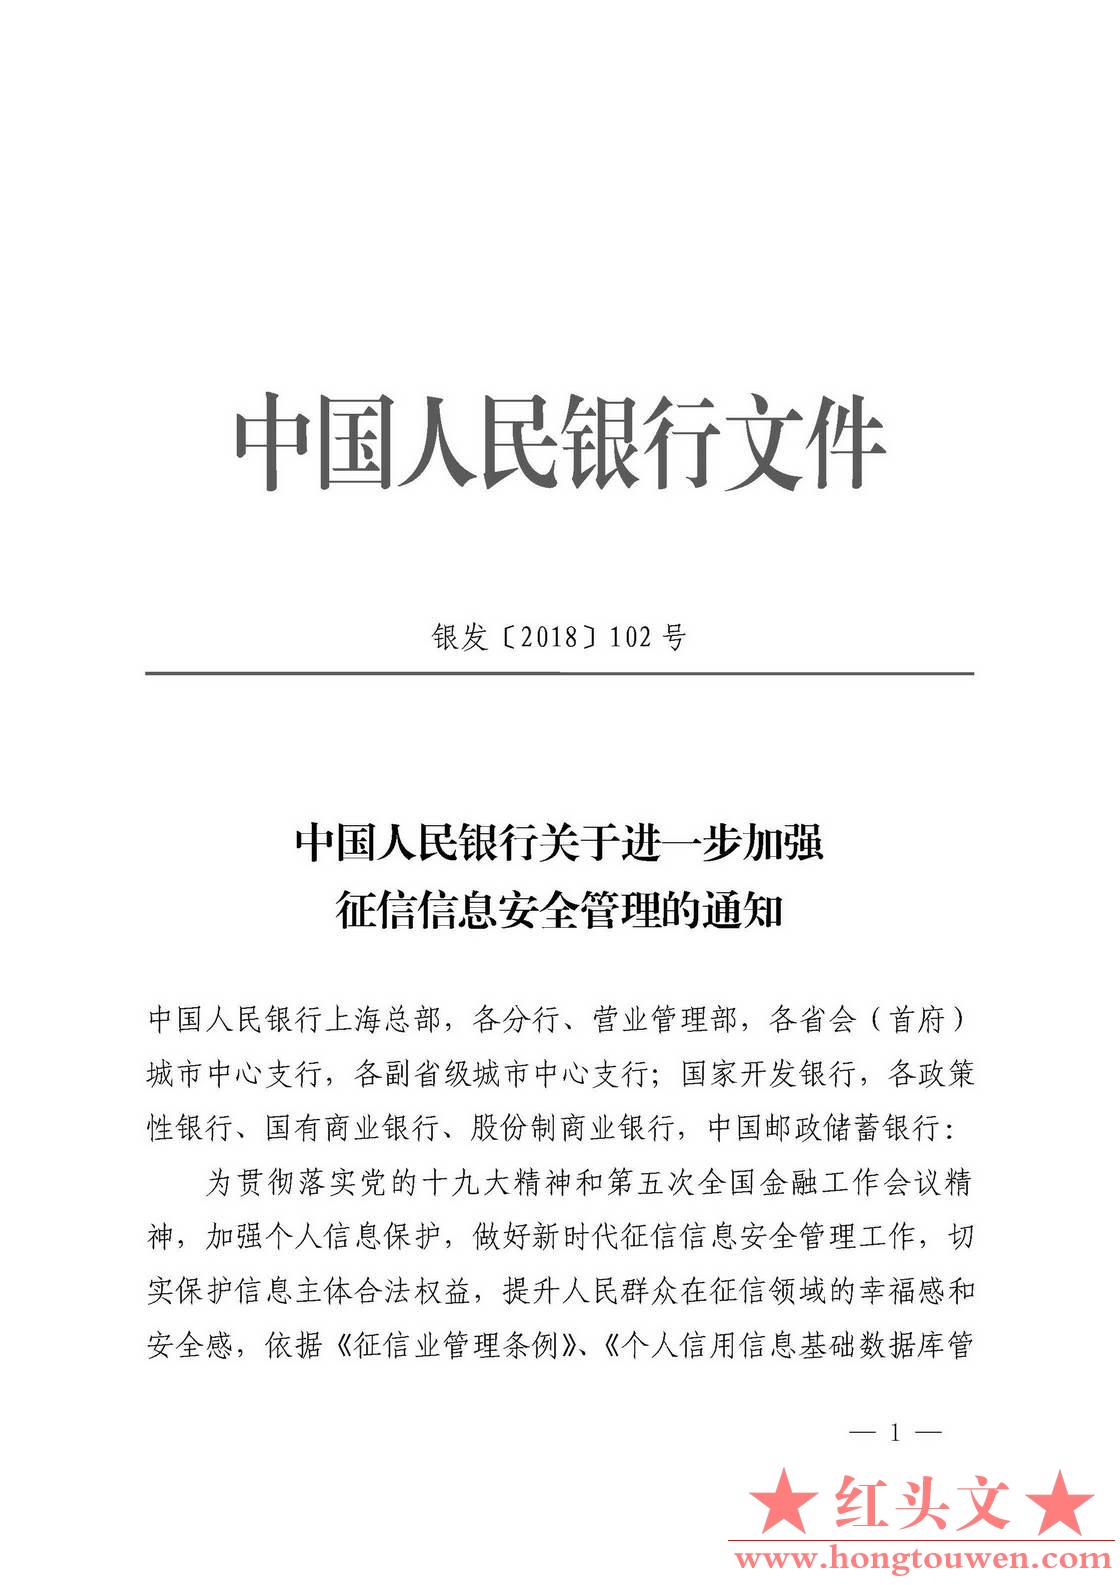 银发[2018]102号-中国人民银行关于进一步加强征信信息安全管理的通知_页面_01.jpg.jpg